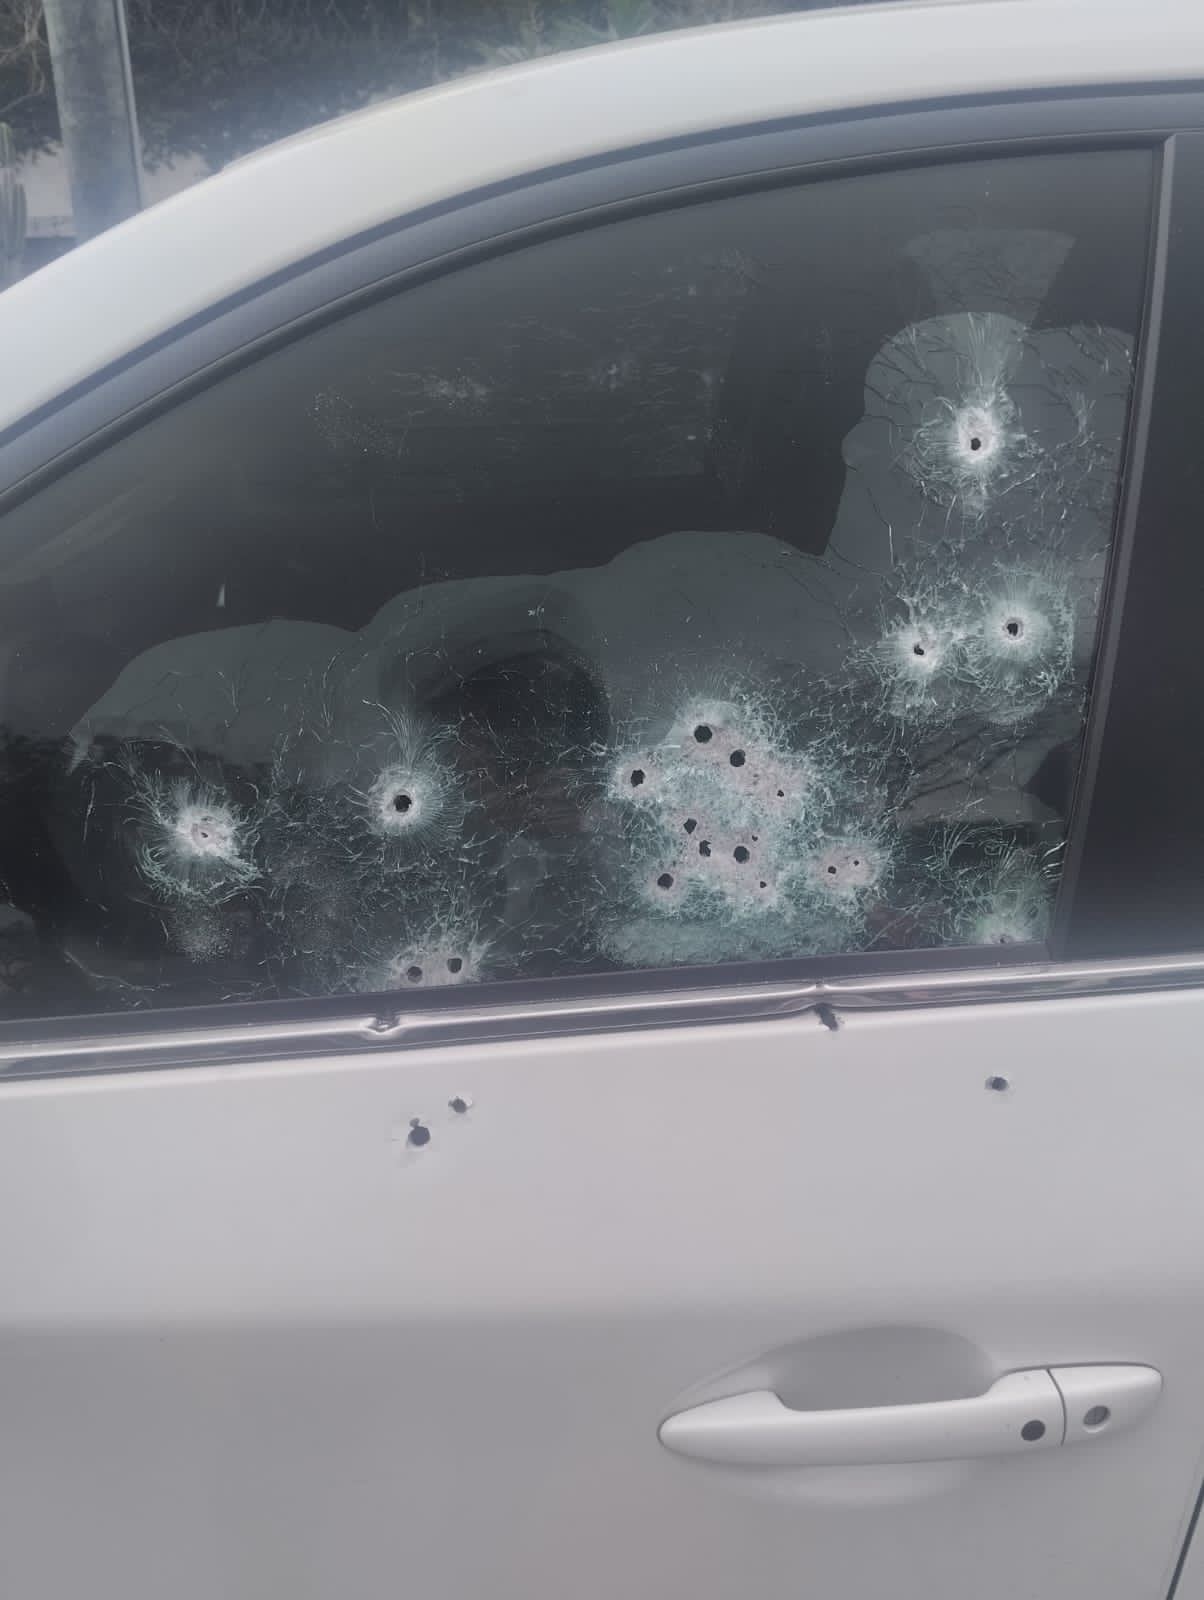 Así quedó la ventana y puerta del vehículo tras el atentado de sicariato que sufrió el fiscal César Suárez.